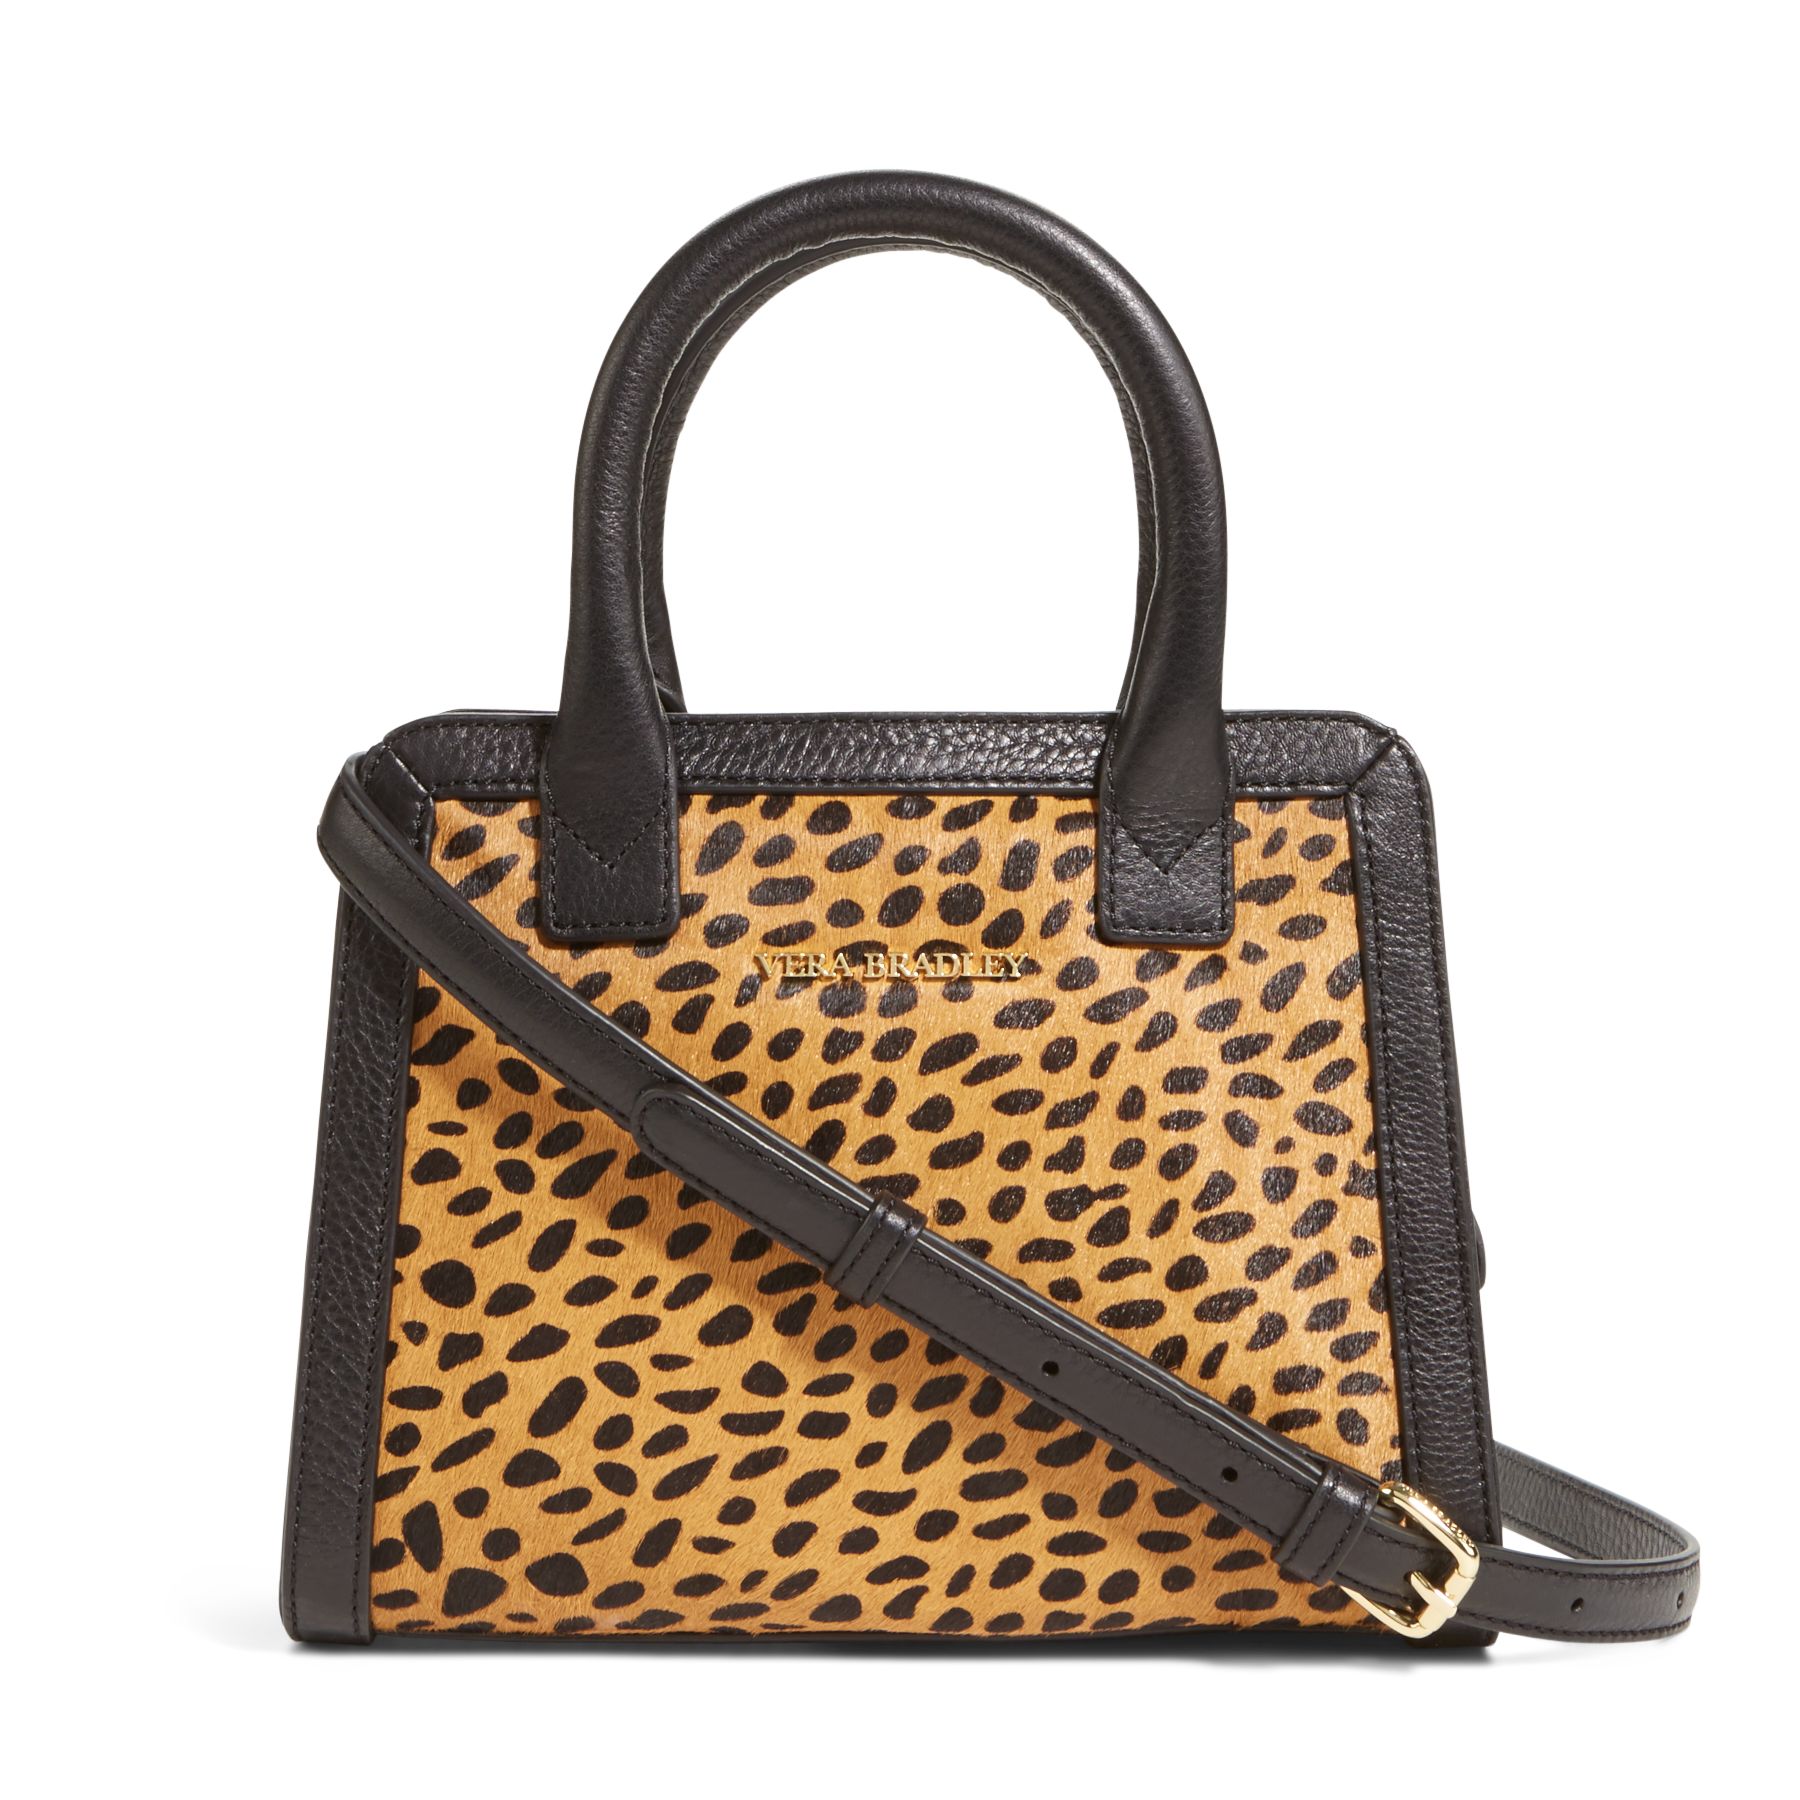 Vera Bradley Leather Natalie Crossbody Bag | eBay